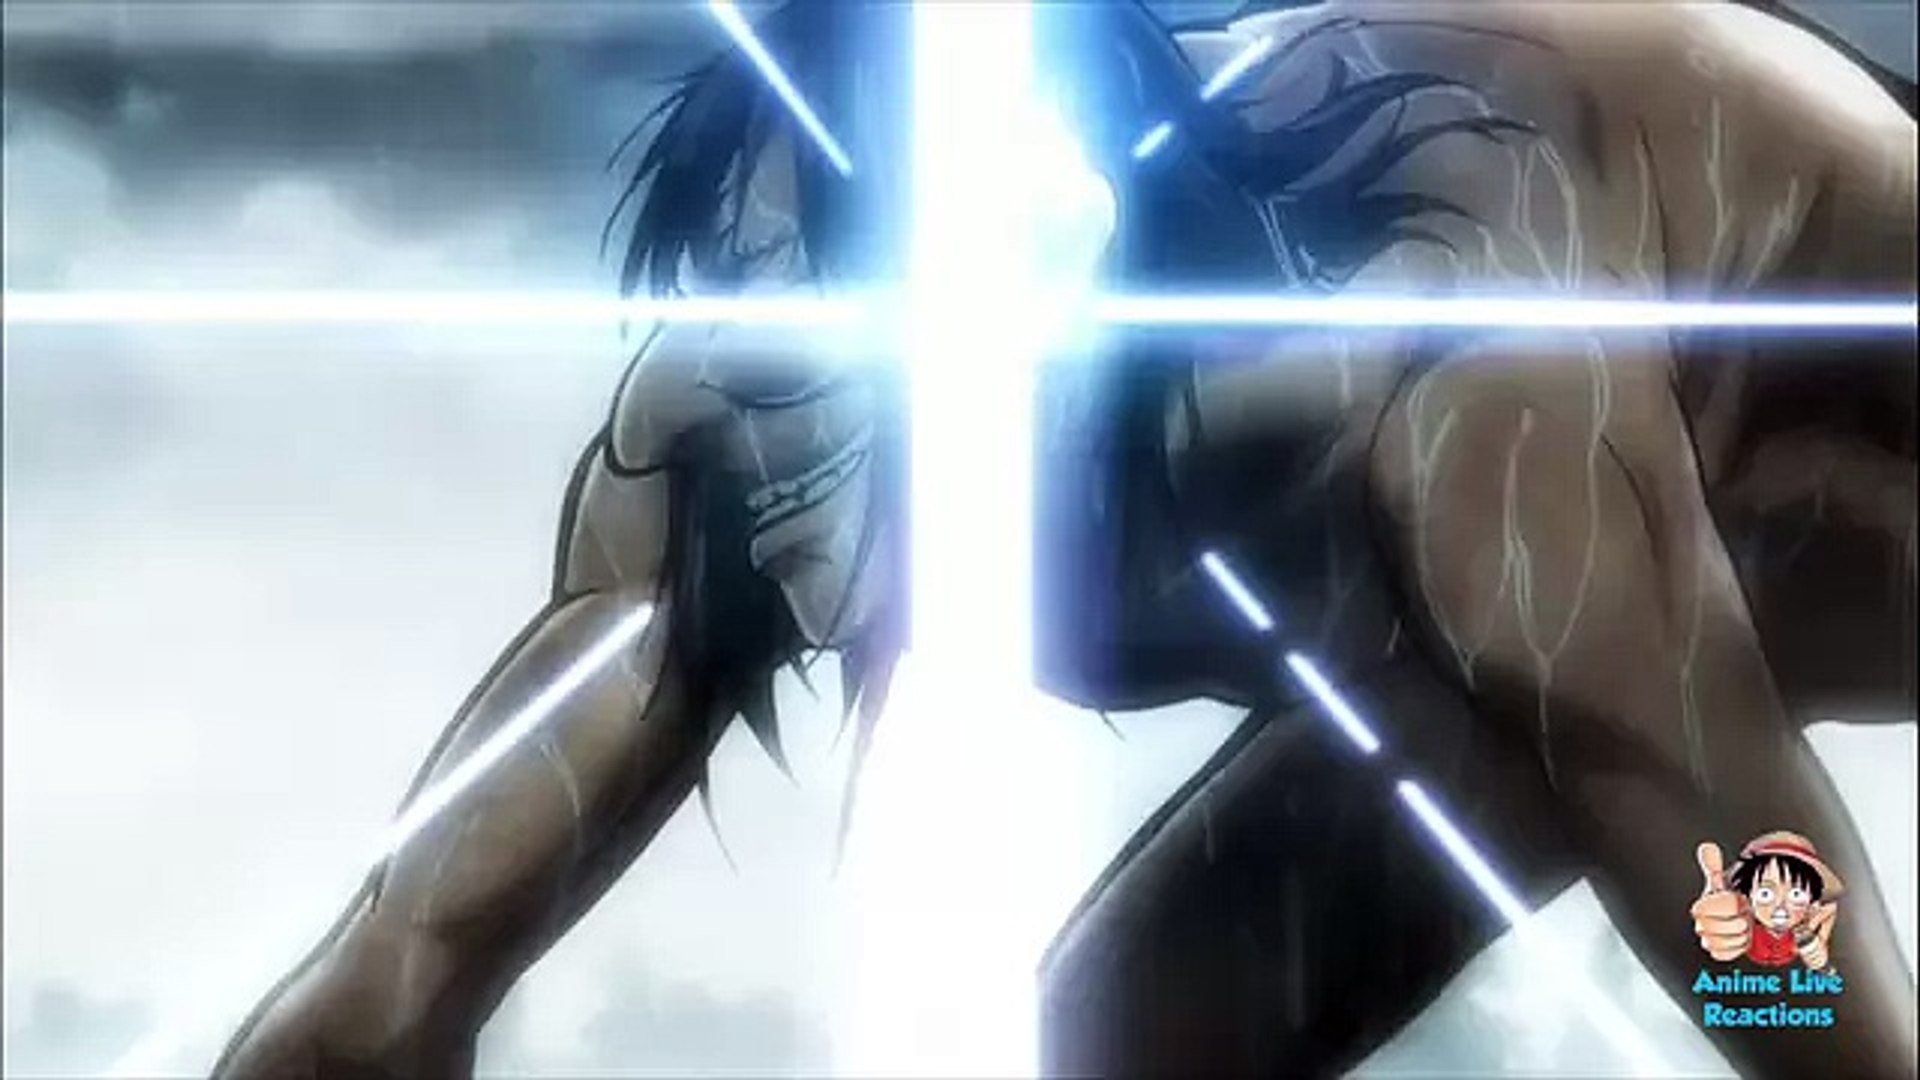 Levi dá uma surra no Titan Bestial - Shingeki no Kyojin Dublado